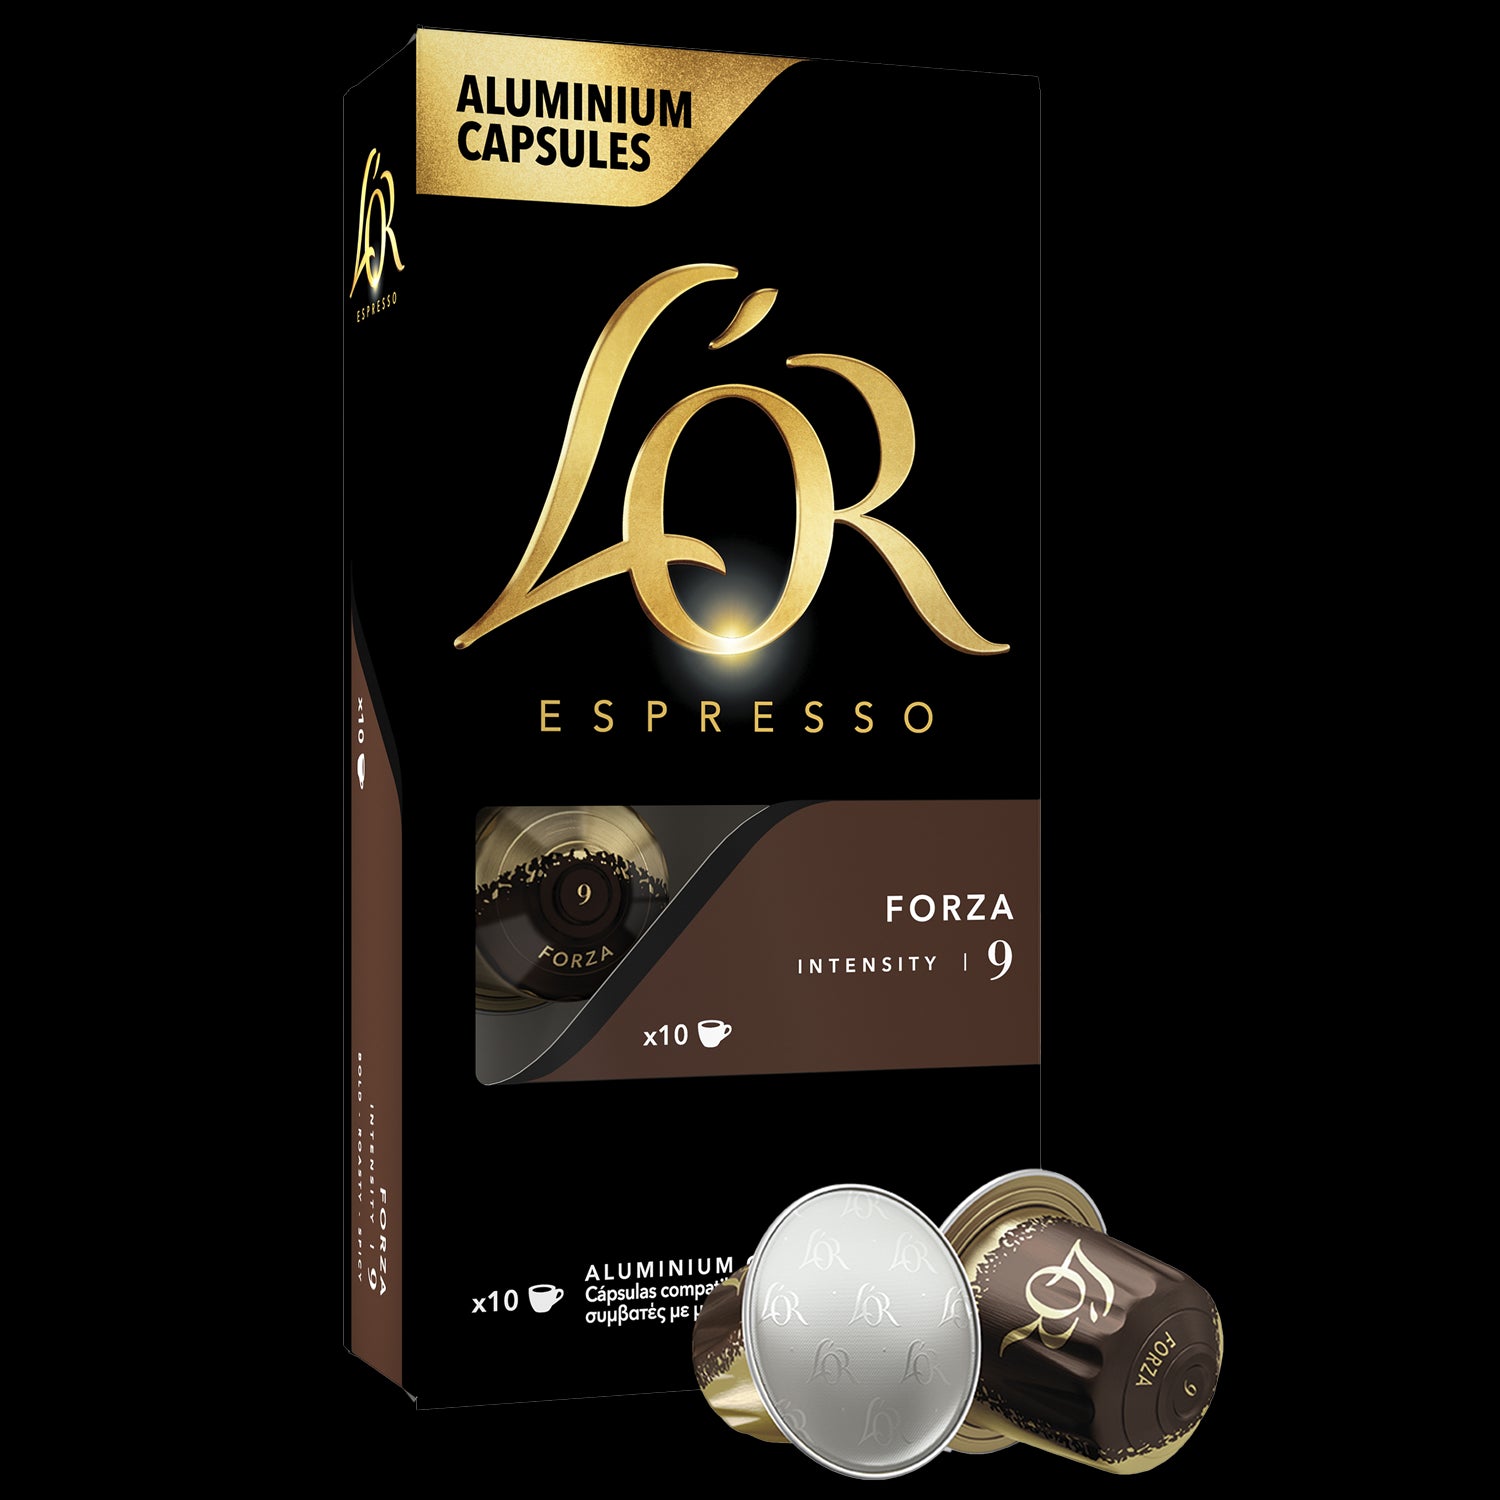 L'Or Espresso Capsules de café espresso, Forza, intensité 9